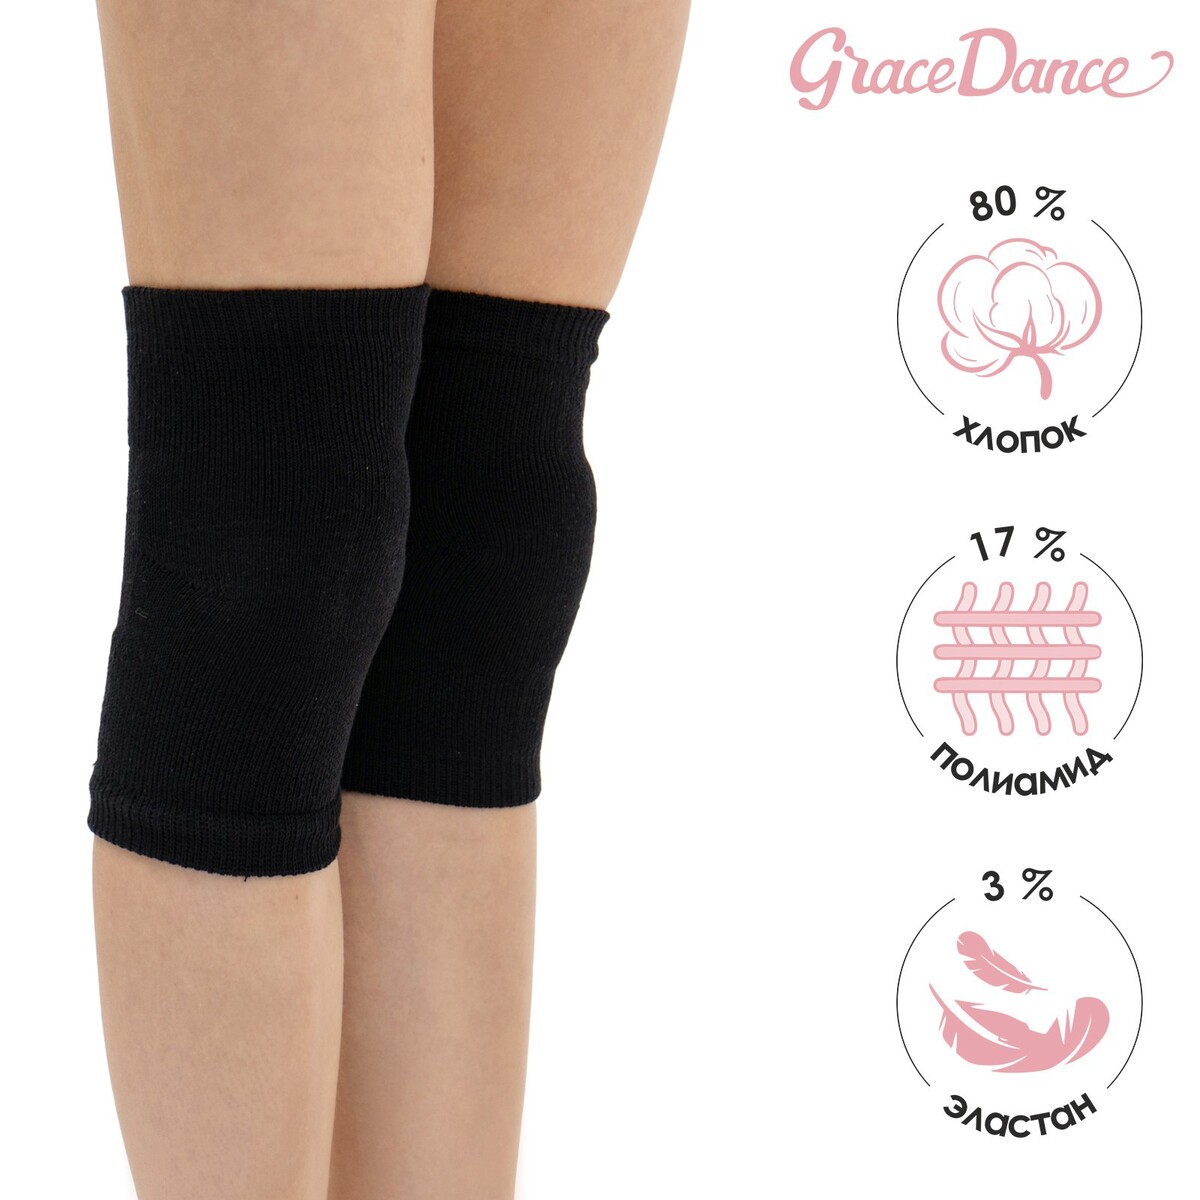 Наколенники для гимнастики и танцев grace dance №2, р. s, цвет черный Grace Dance